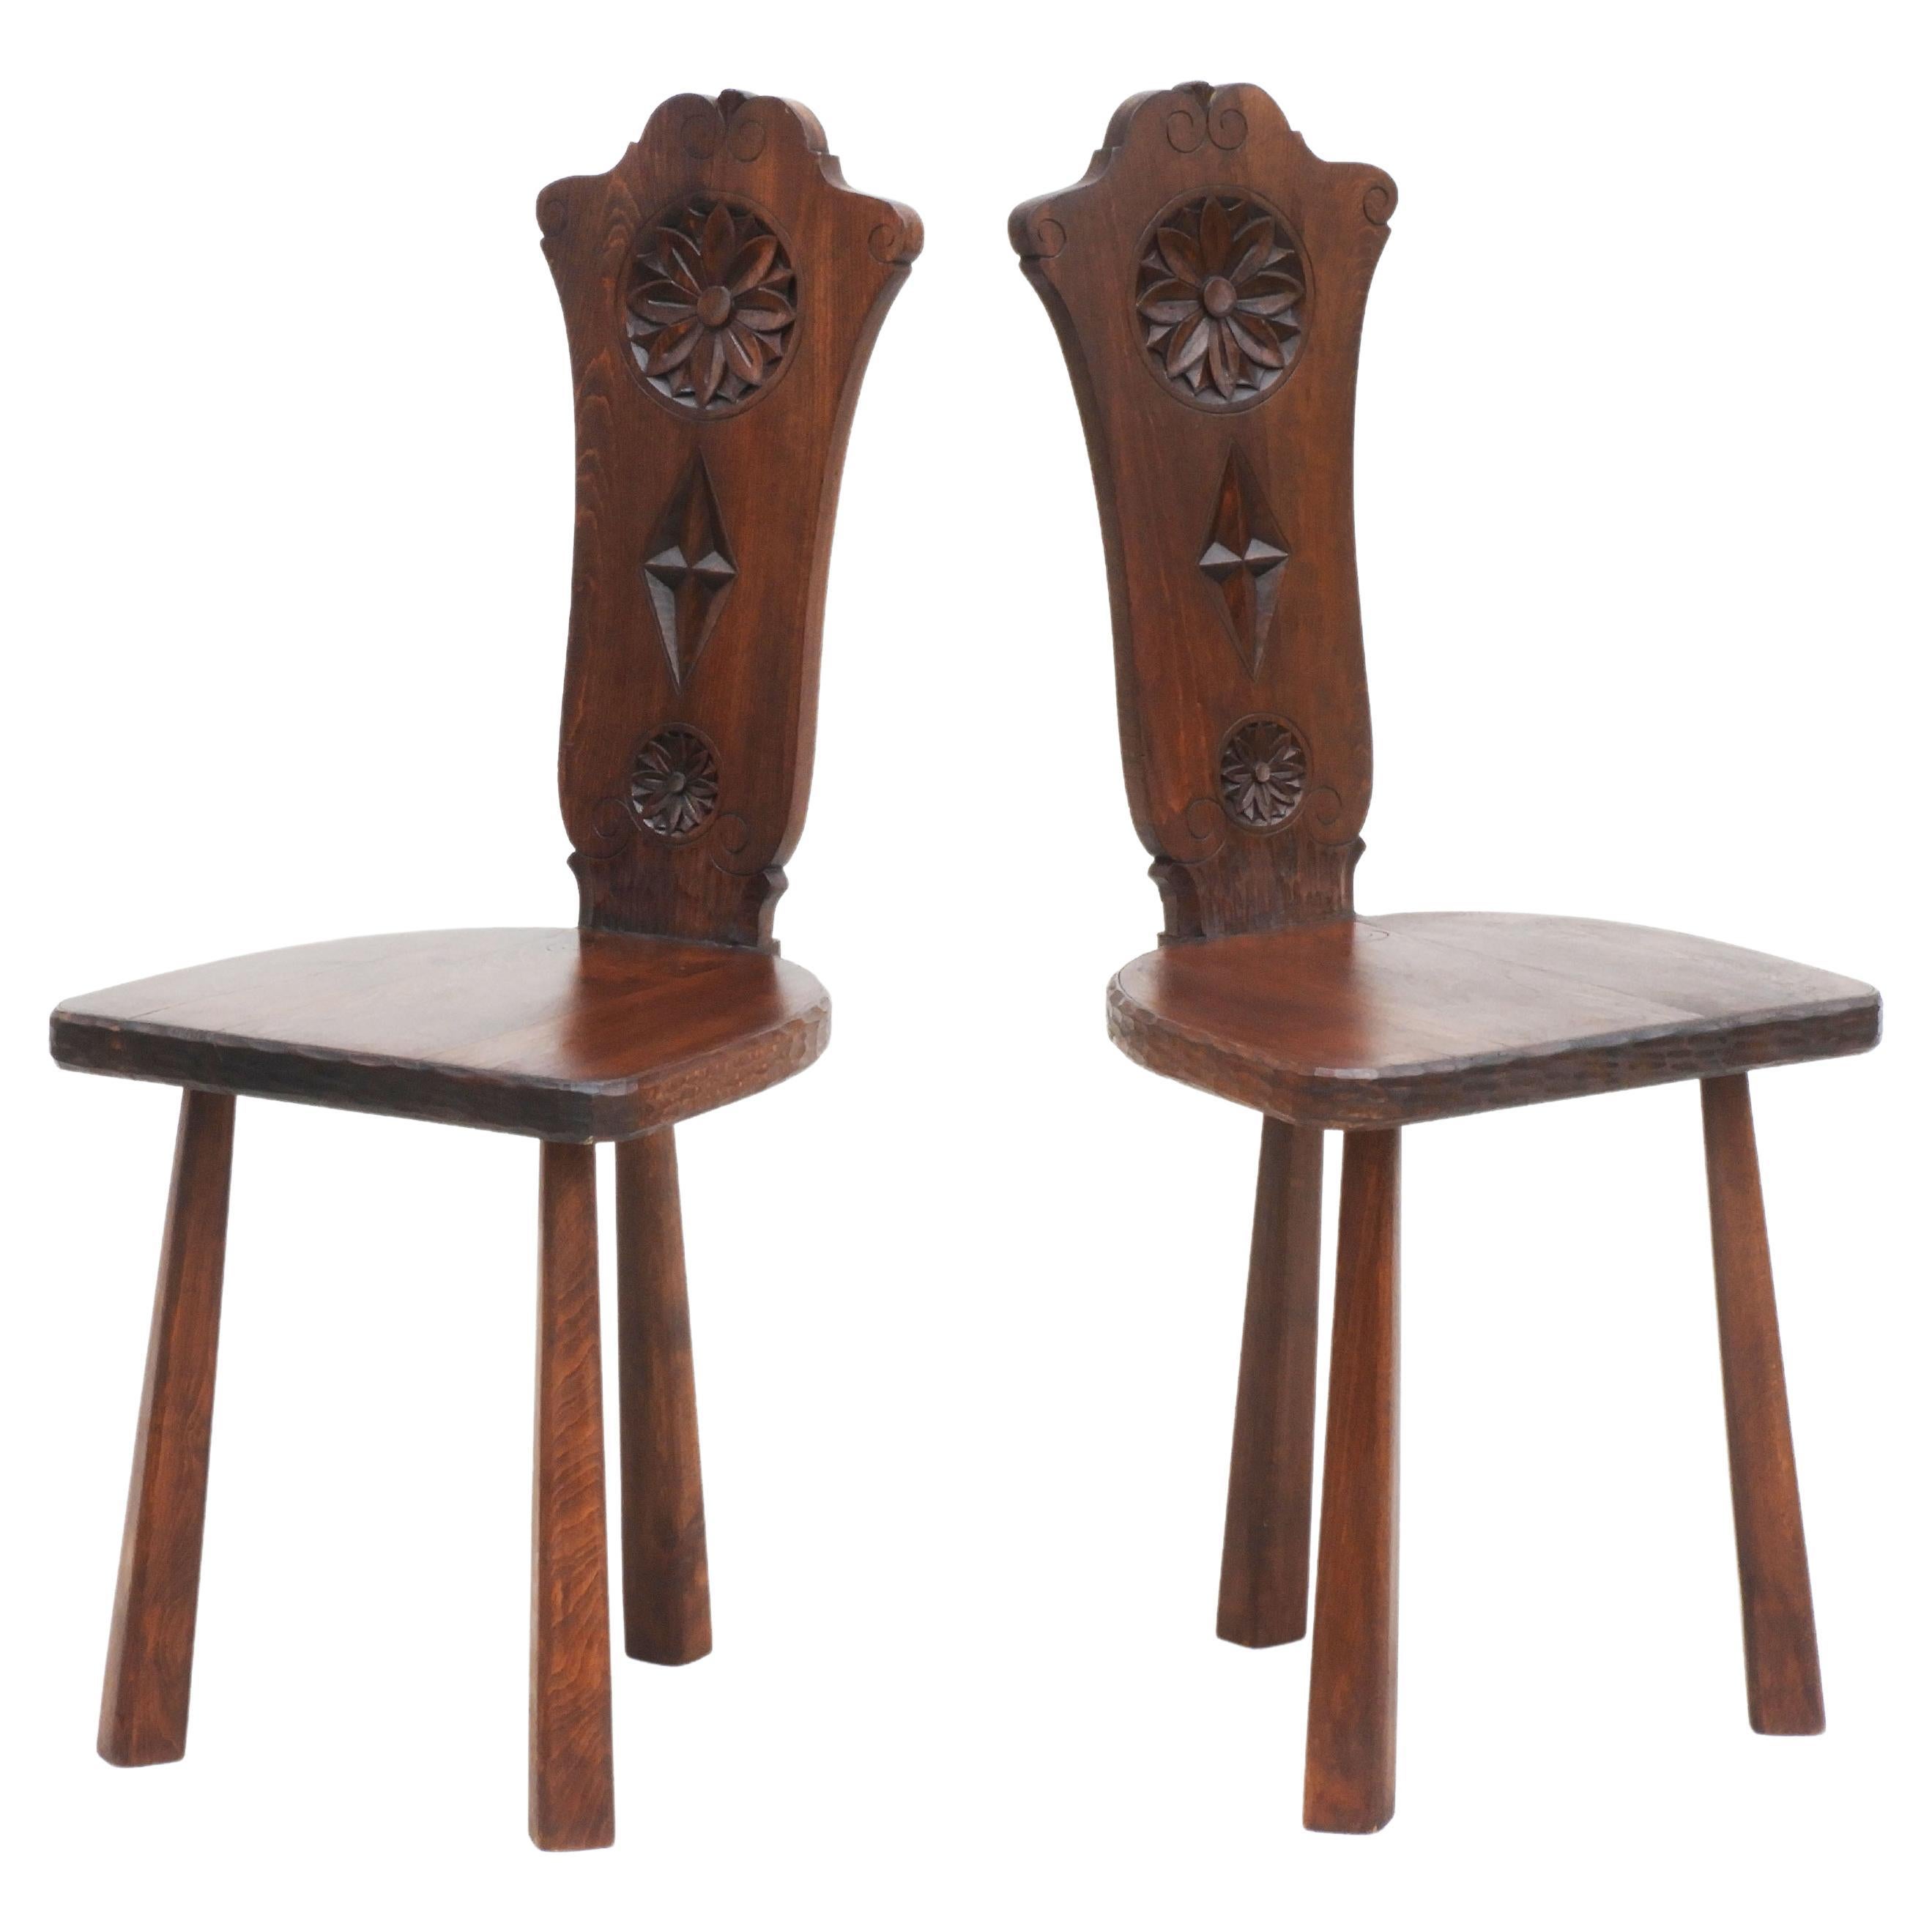 Pair of Basque Tripod Chairs 1950s European Folk Art For Sale